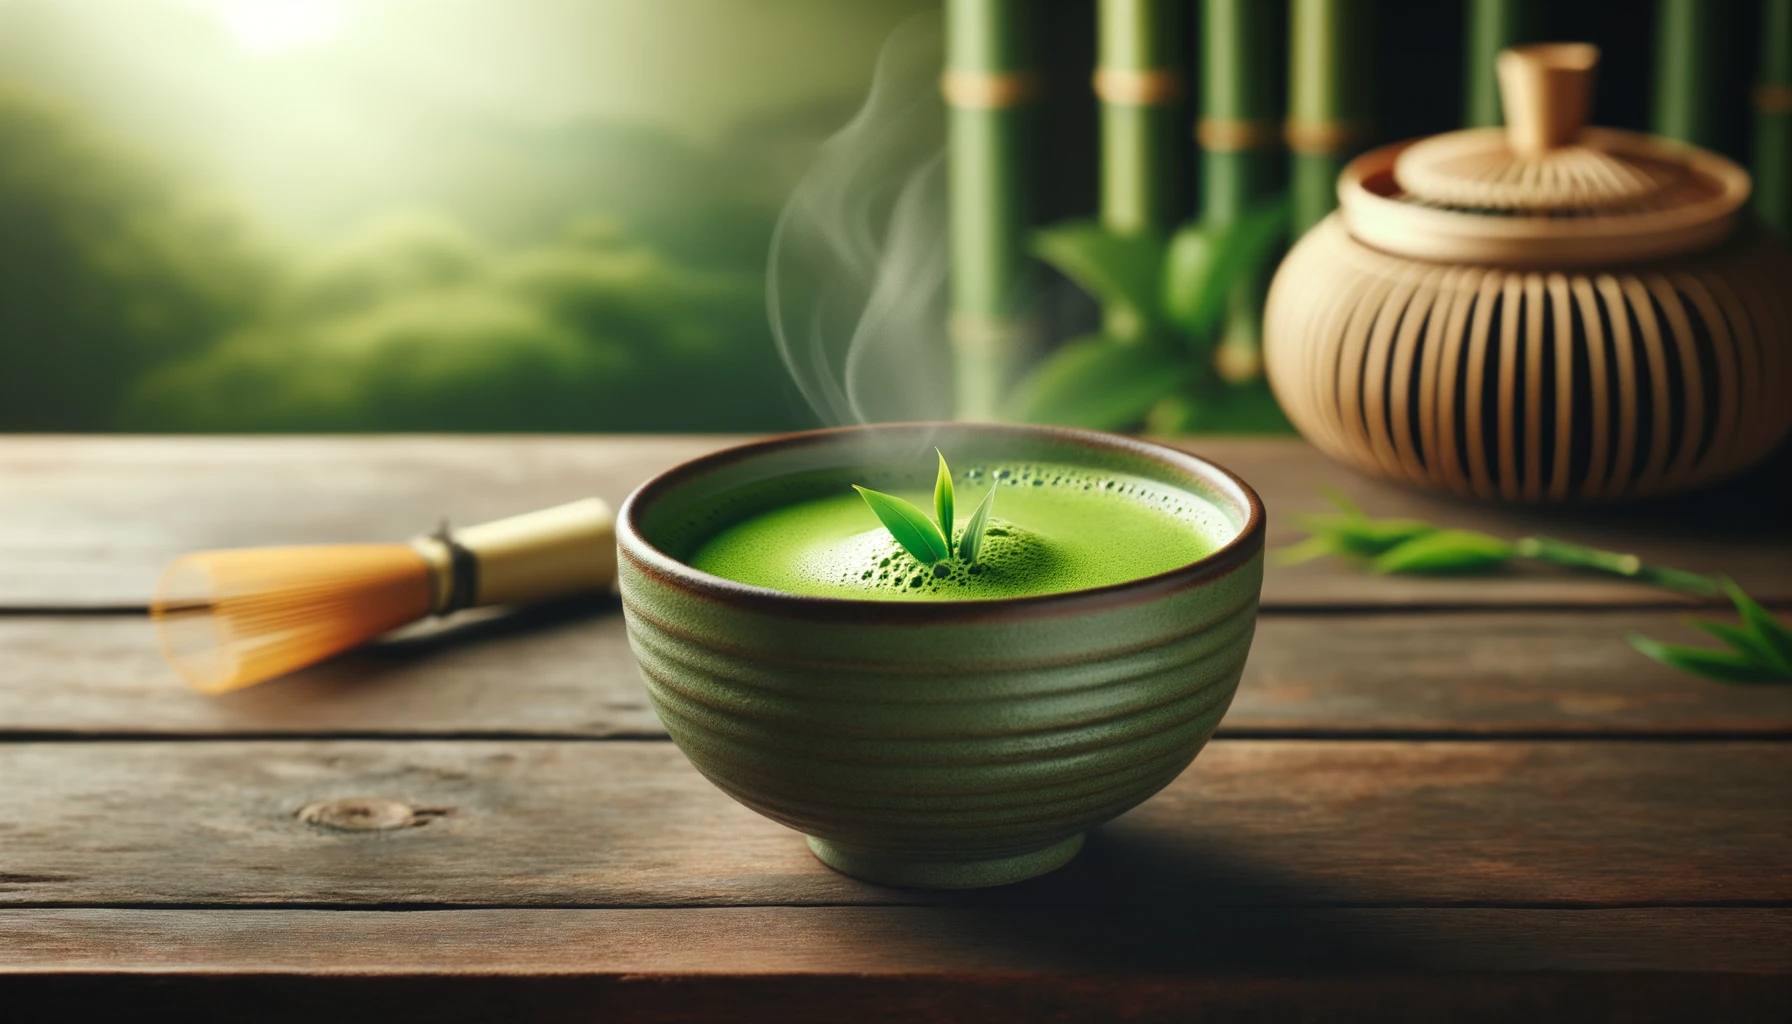 Tazón de té matcha de color verde brillante con vapor ascendente, frente a un sereno telón de fondo de inspiración japonesa.